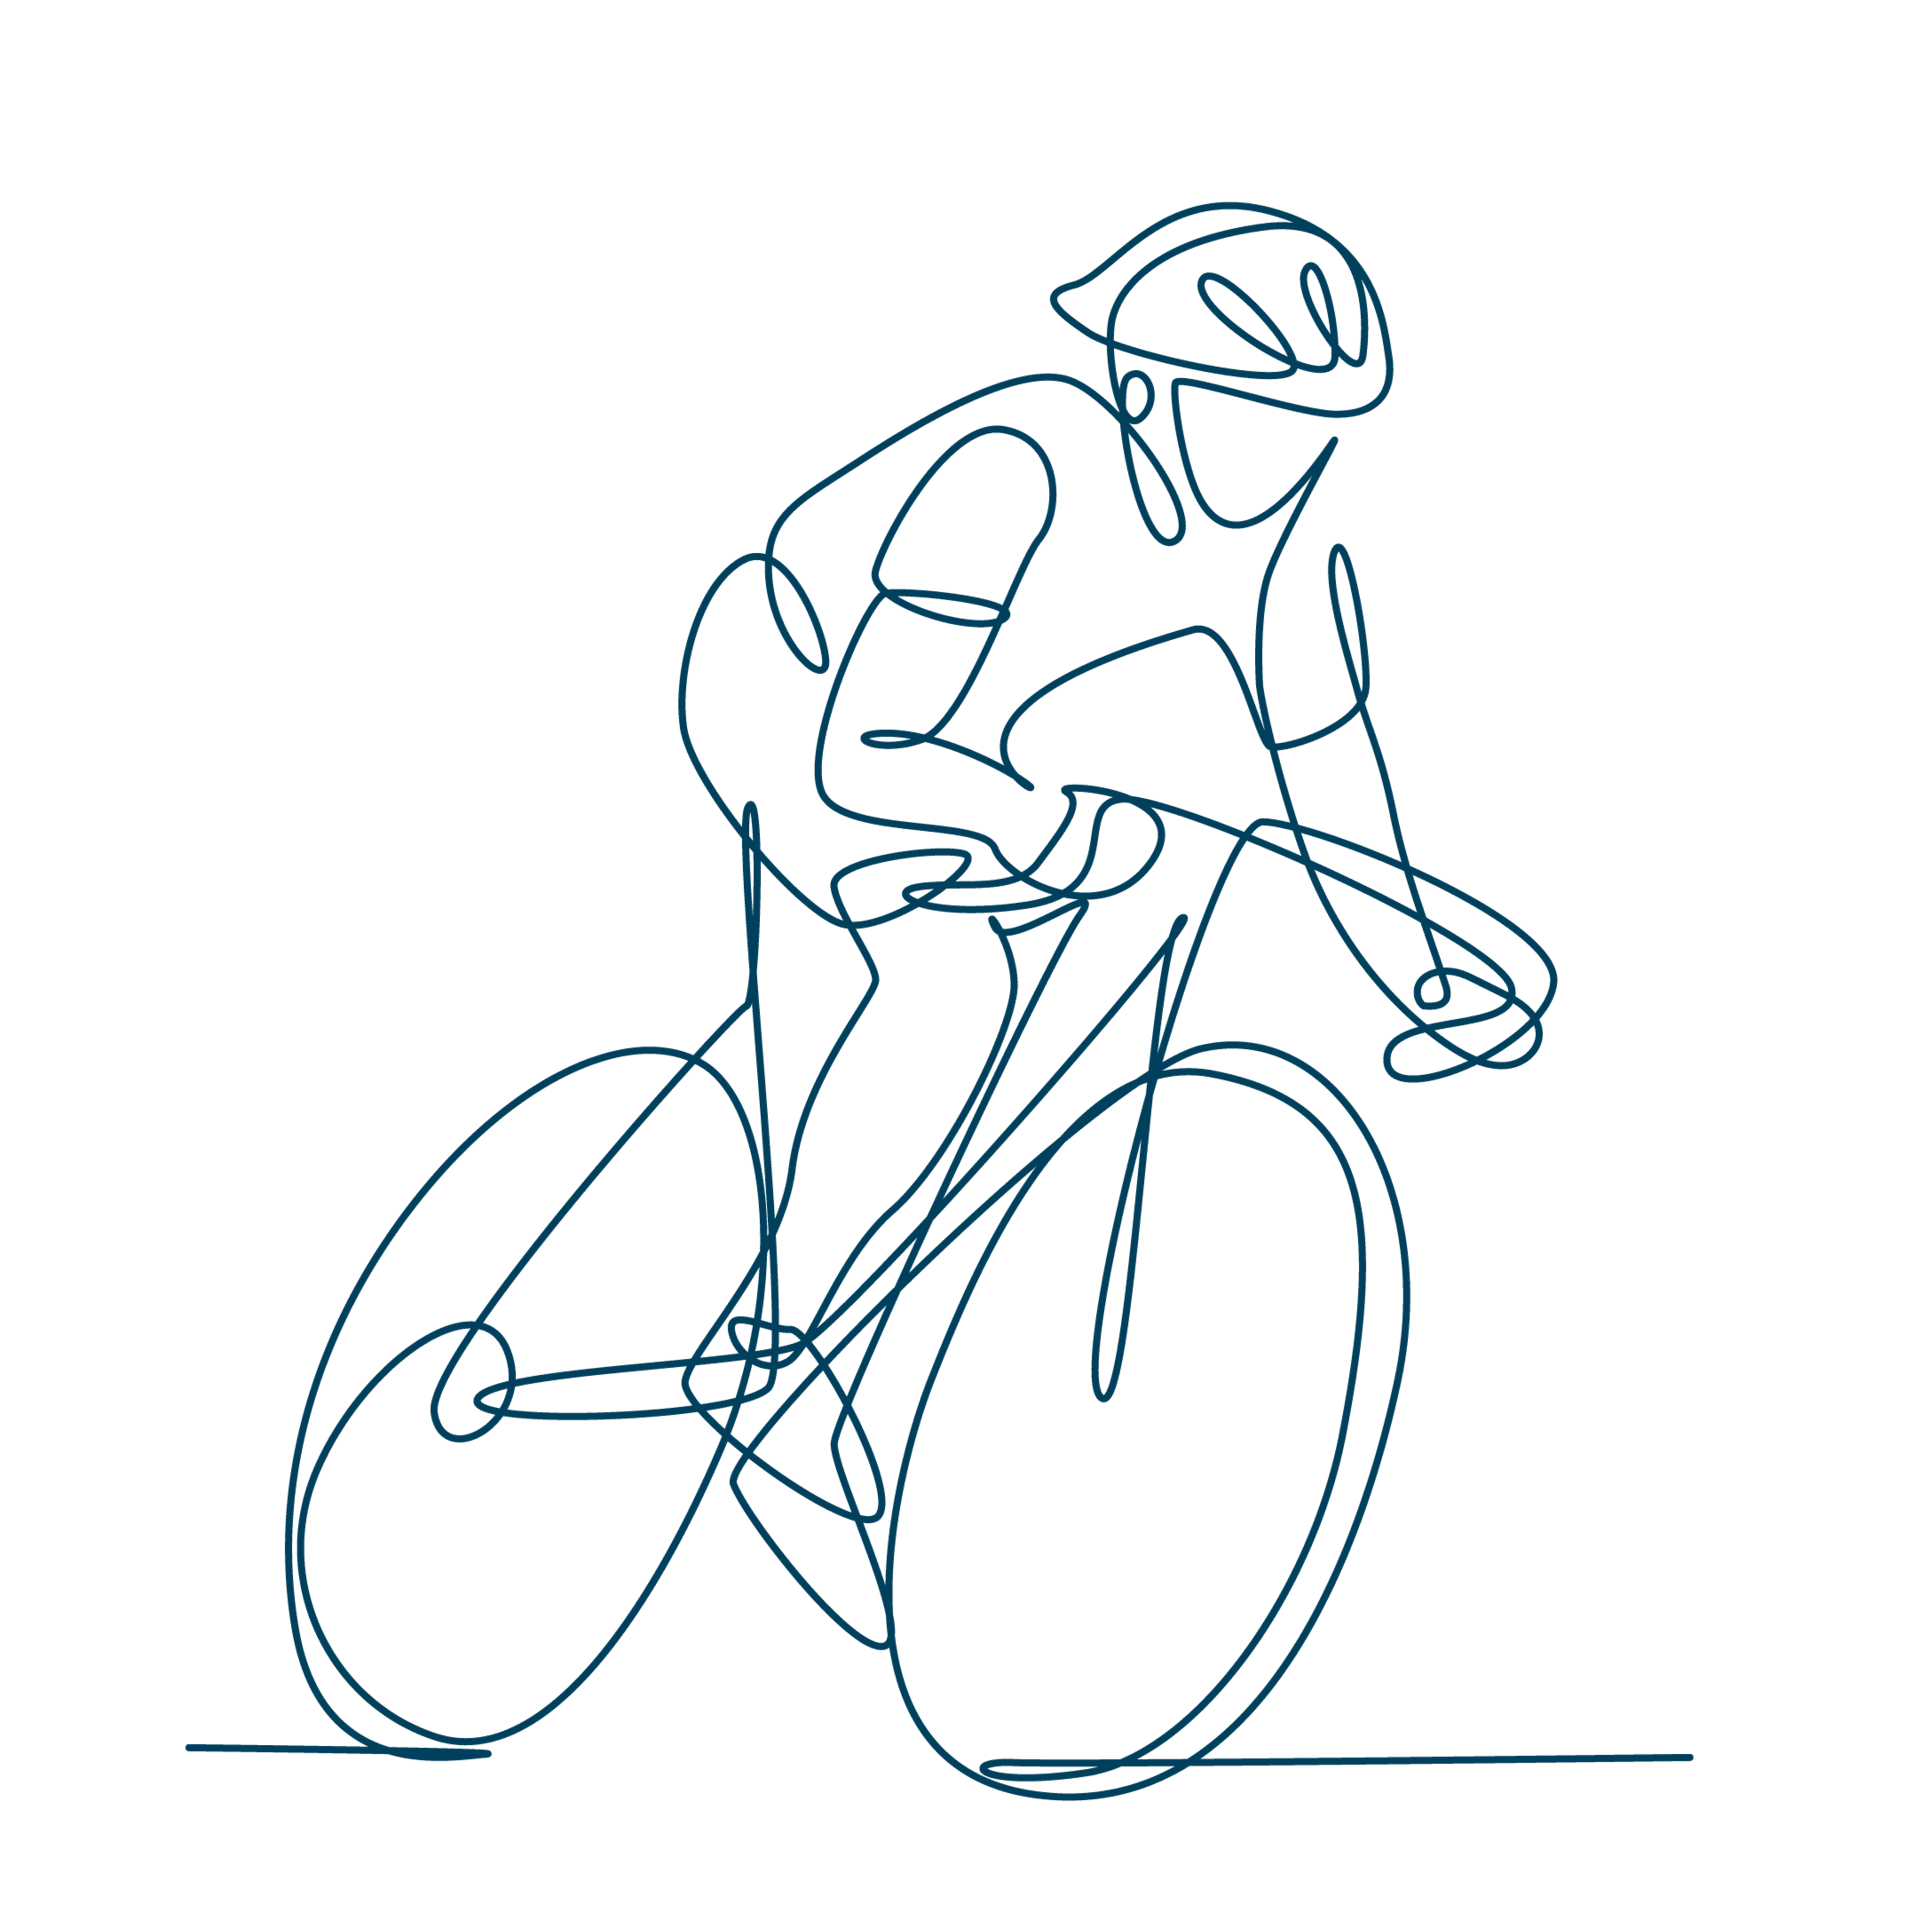 Die Line-Art-Zeichnung eines Rennradfahrers steht für den Sixtus Sportdienst.